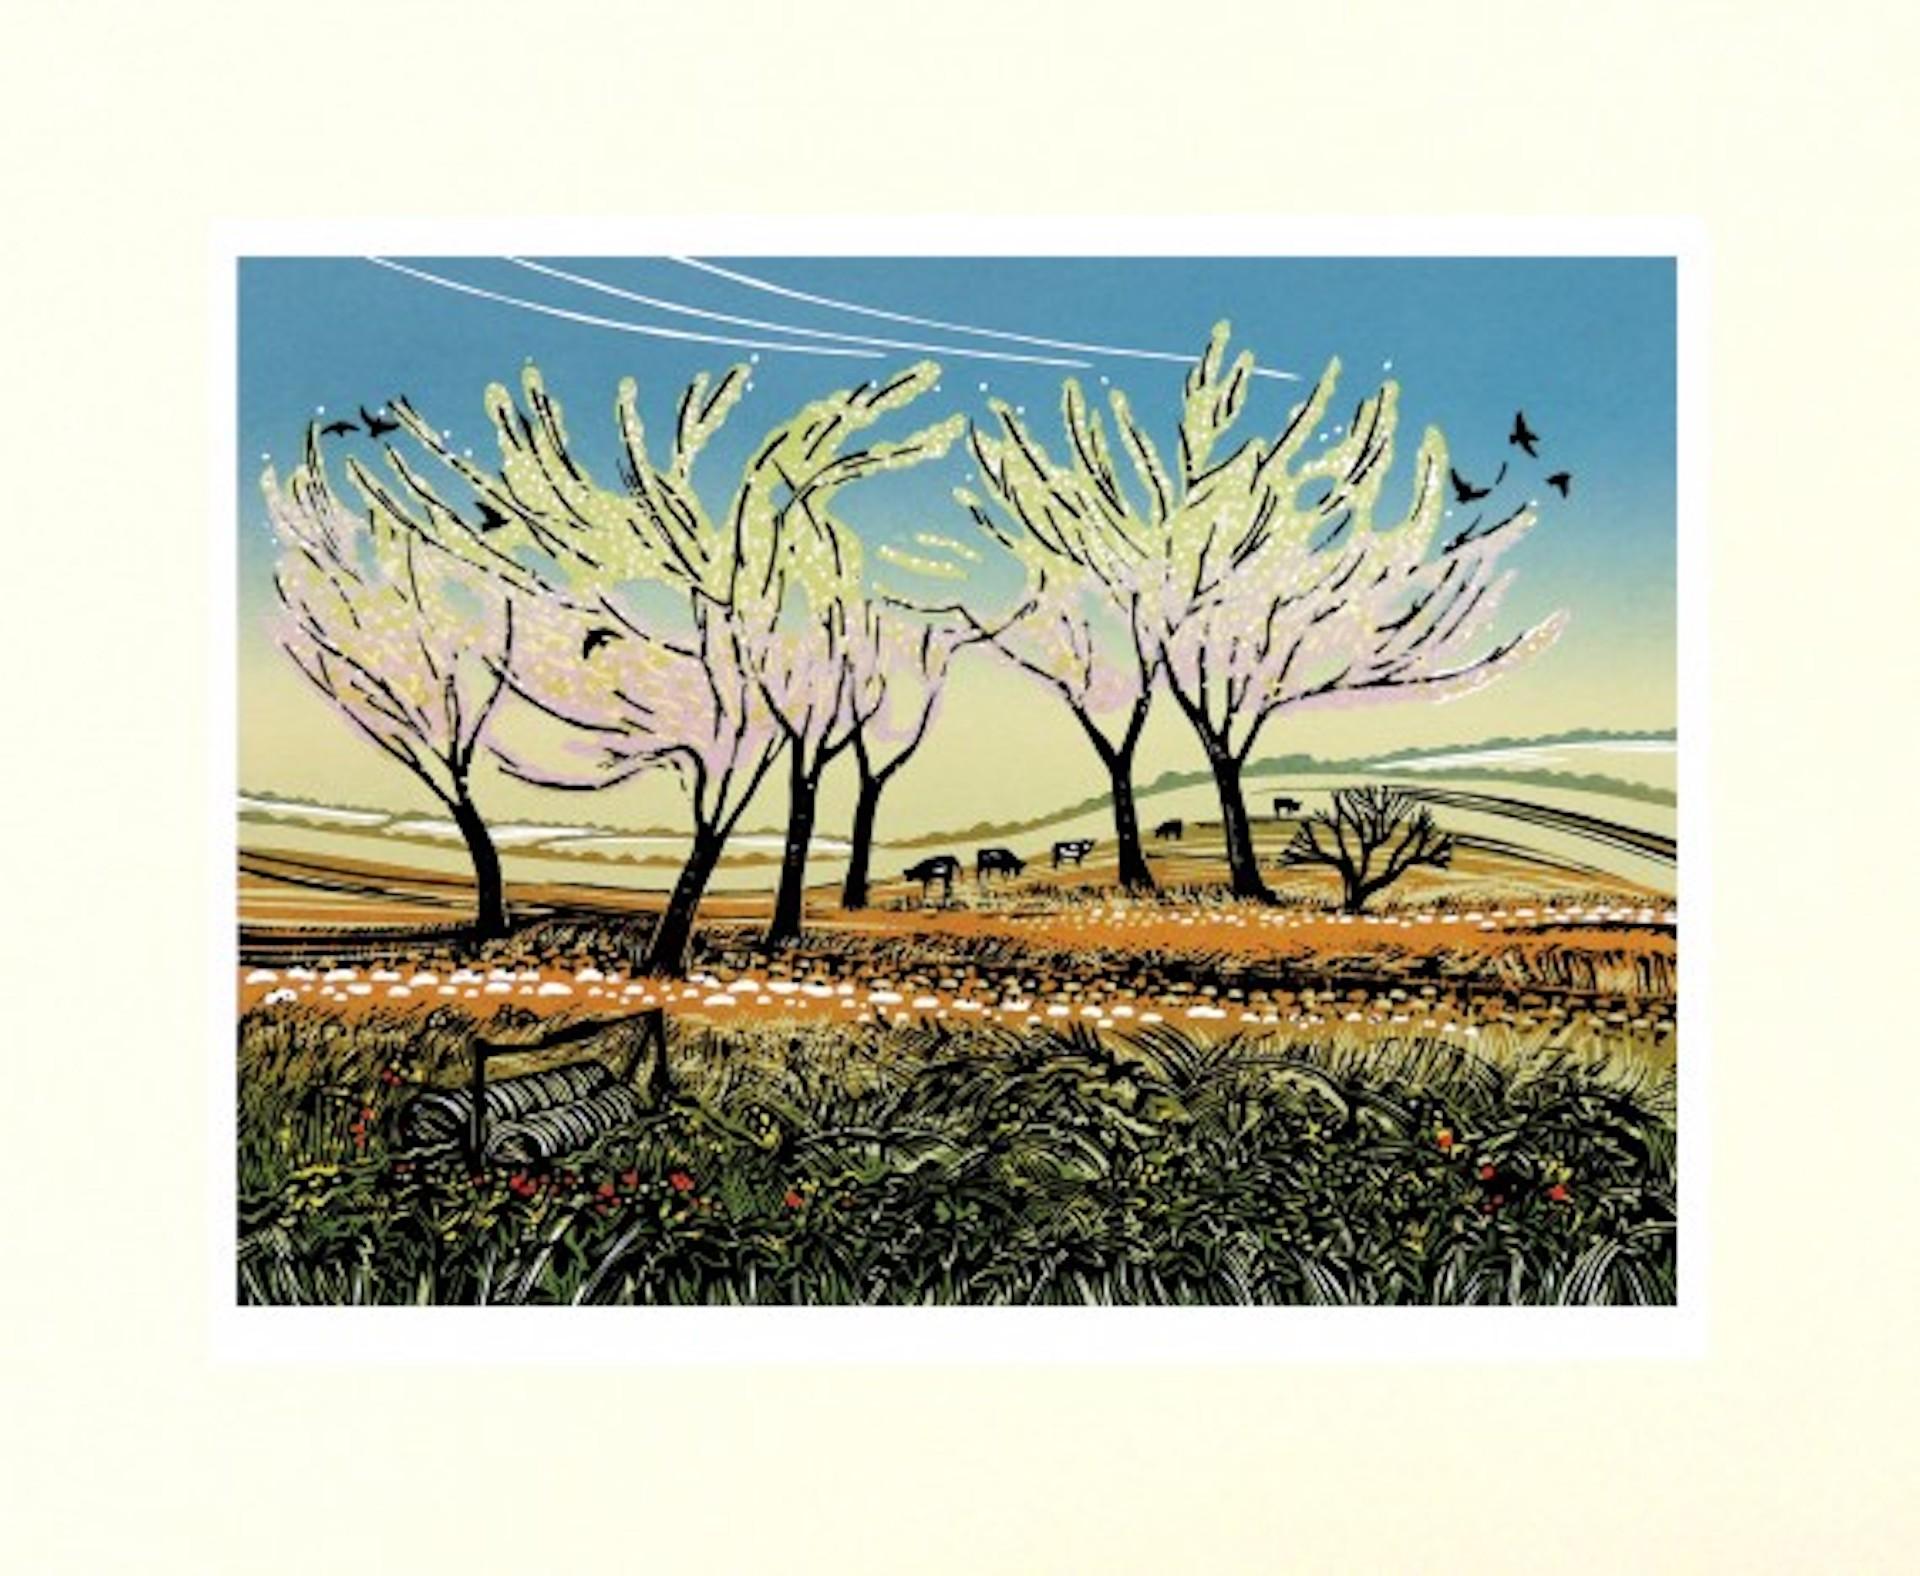 Blossom in the Wind, Landschaftsdruck in limitierter Auflage, Landschaftsdruck im Landhausstil, Linolschnitt  (Grau), Animal Print, von Rob Barnes